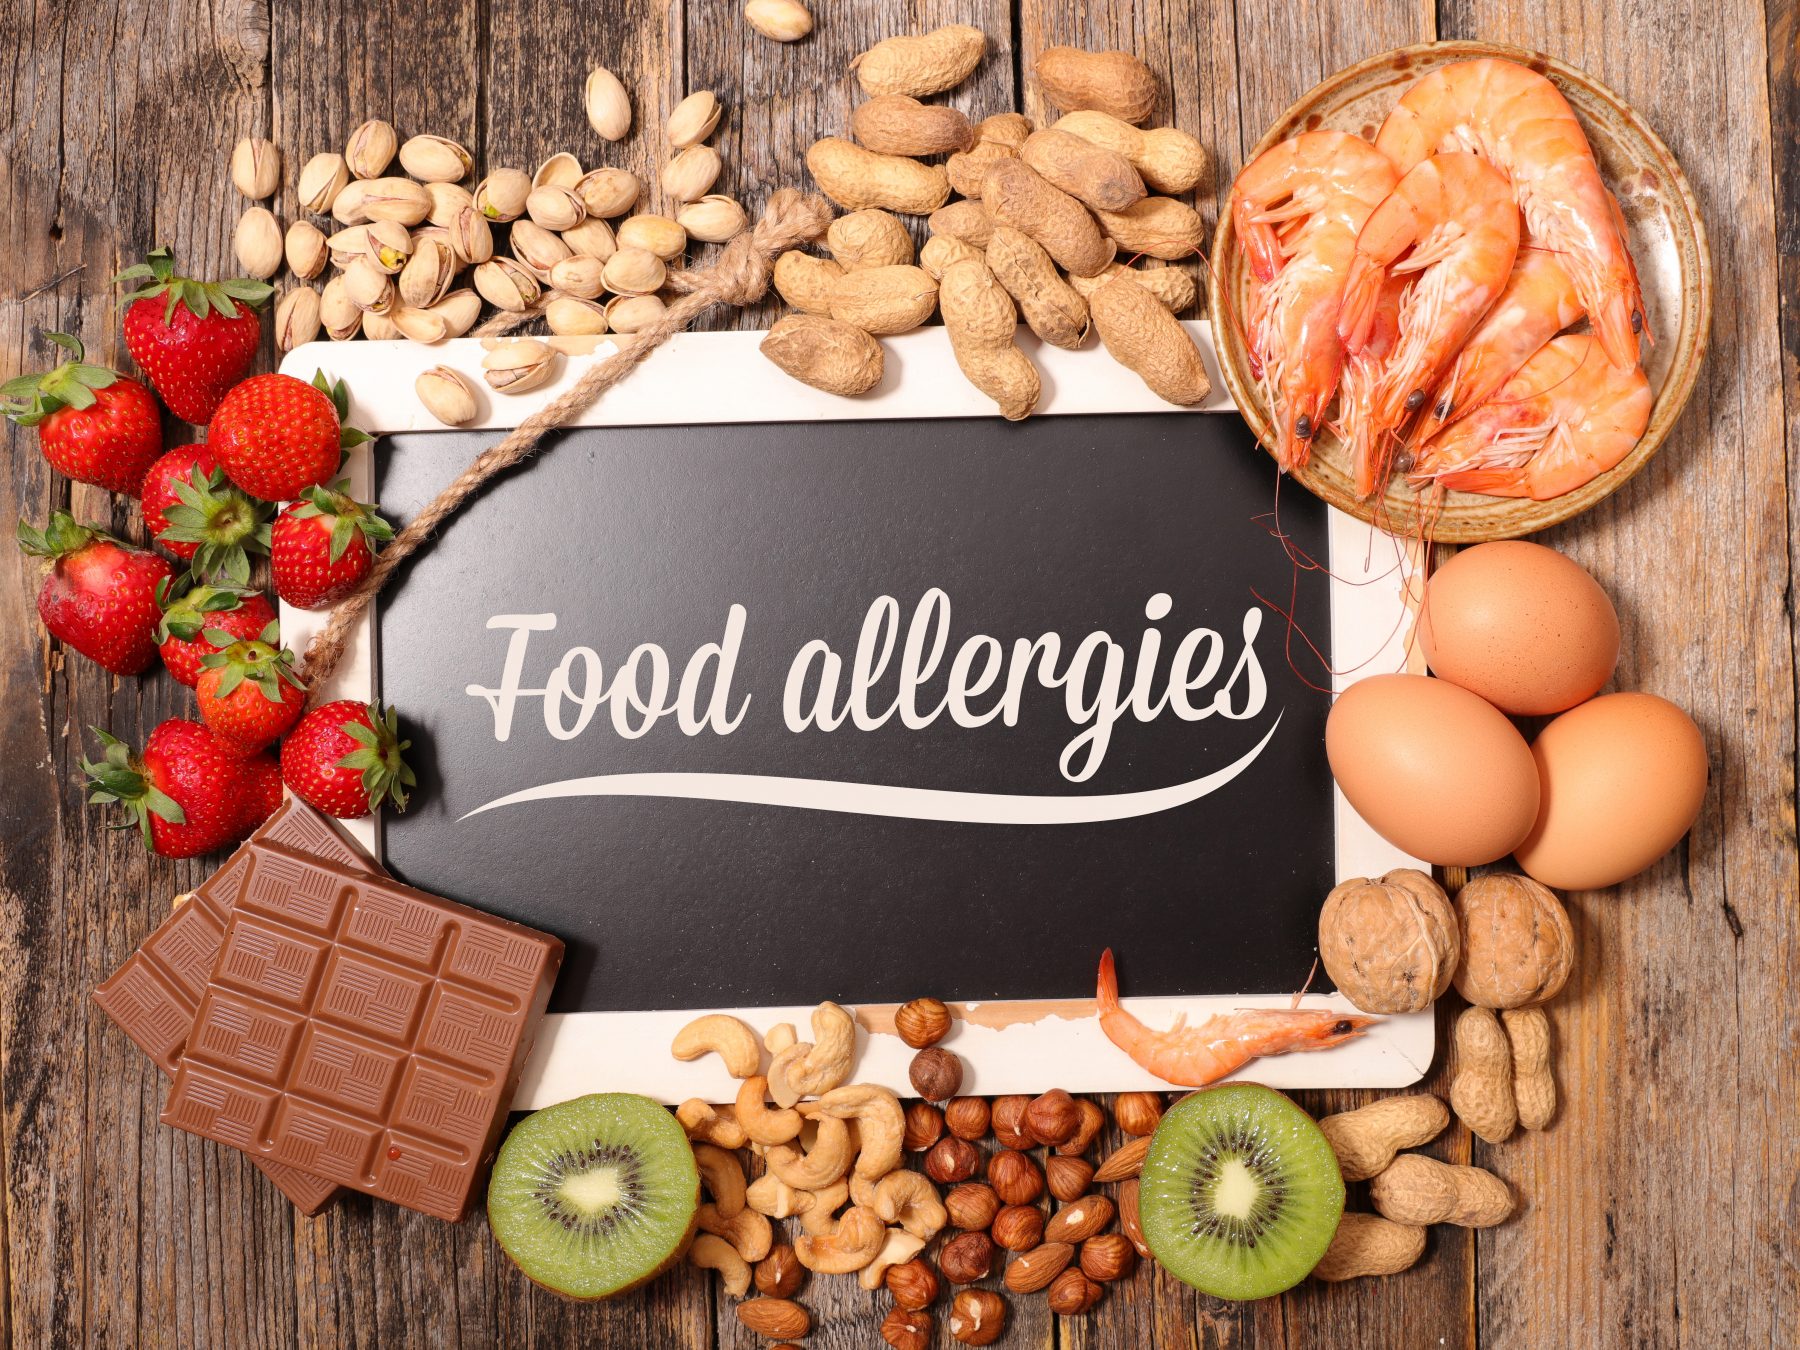 Food allergy sample of foods